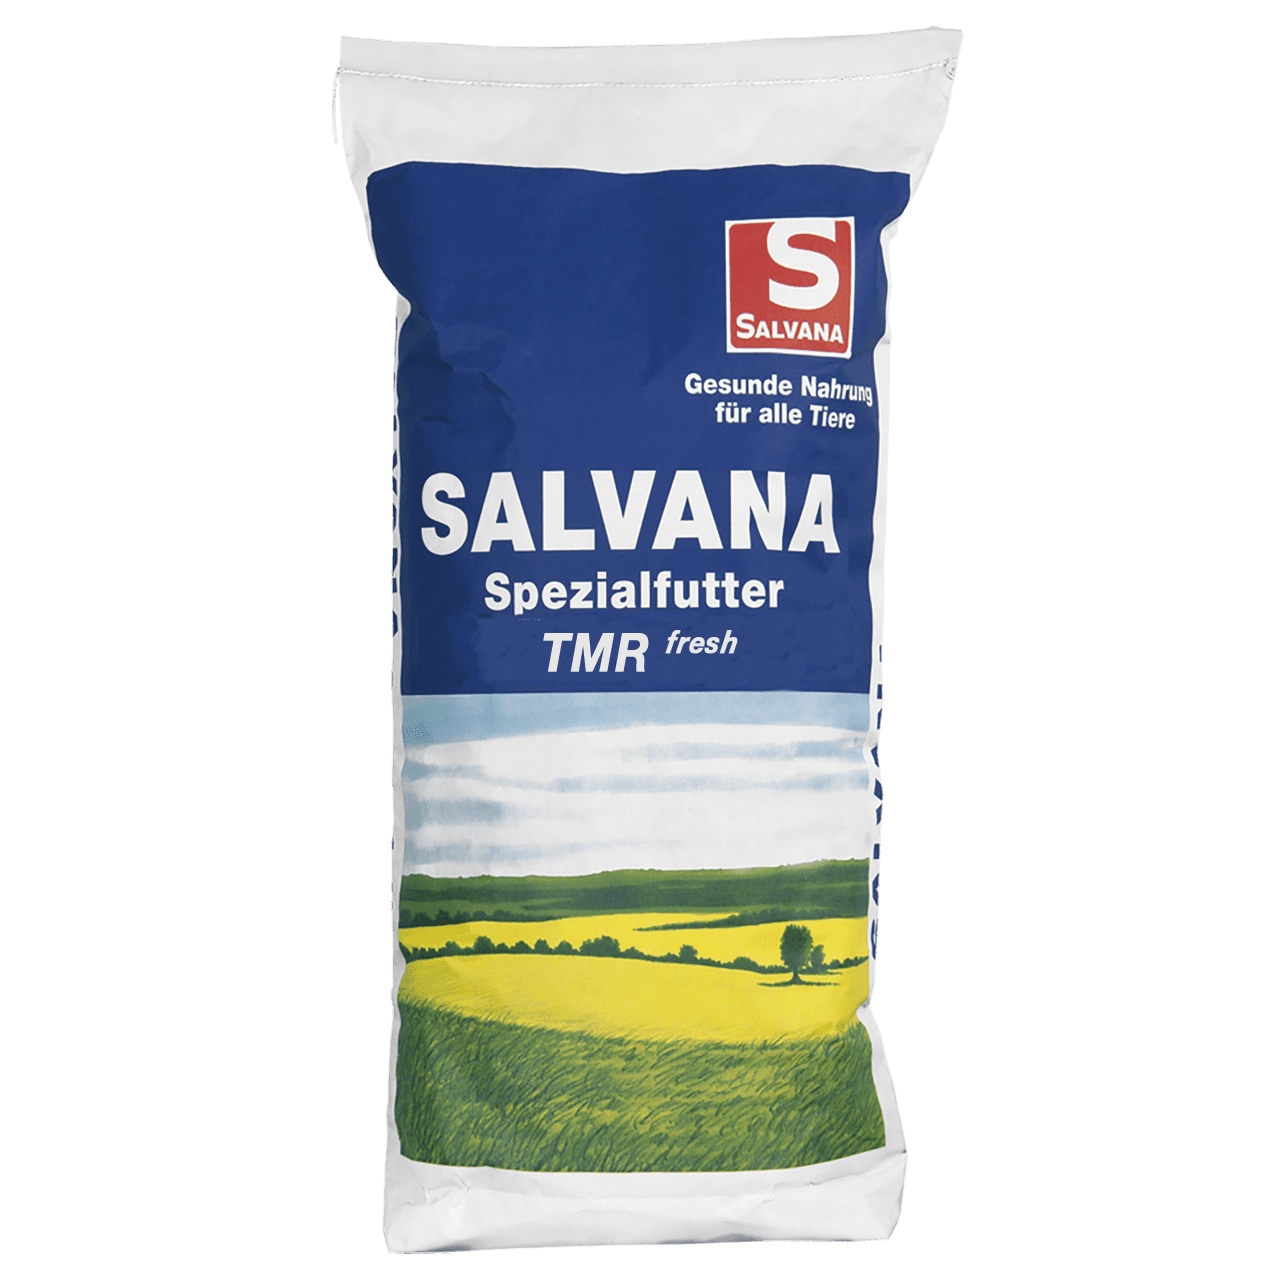 Salvana futter - Die TOP Produkte unter der Vielzahl an analysierten Salvana futter!